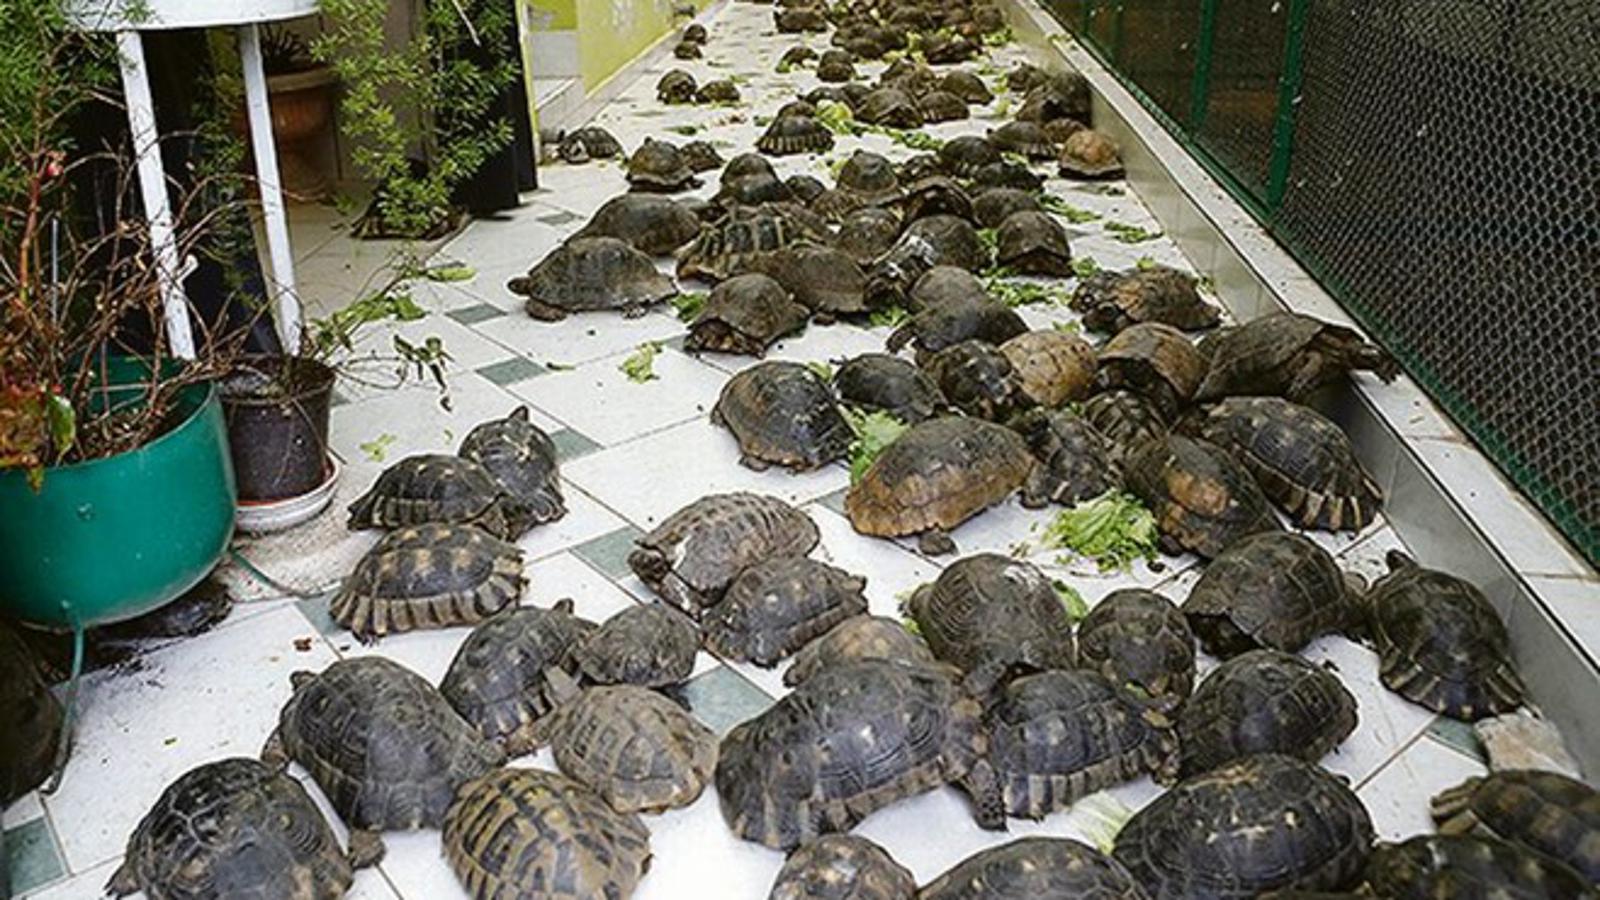 Većinom je riječ o mediteranskim kornjačama koje u ovo doba godine odlaze na zimski san